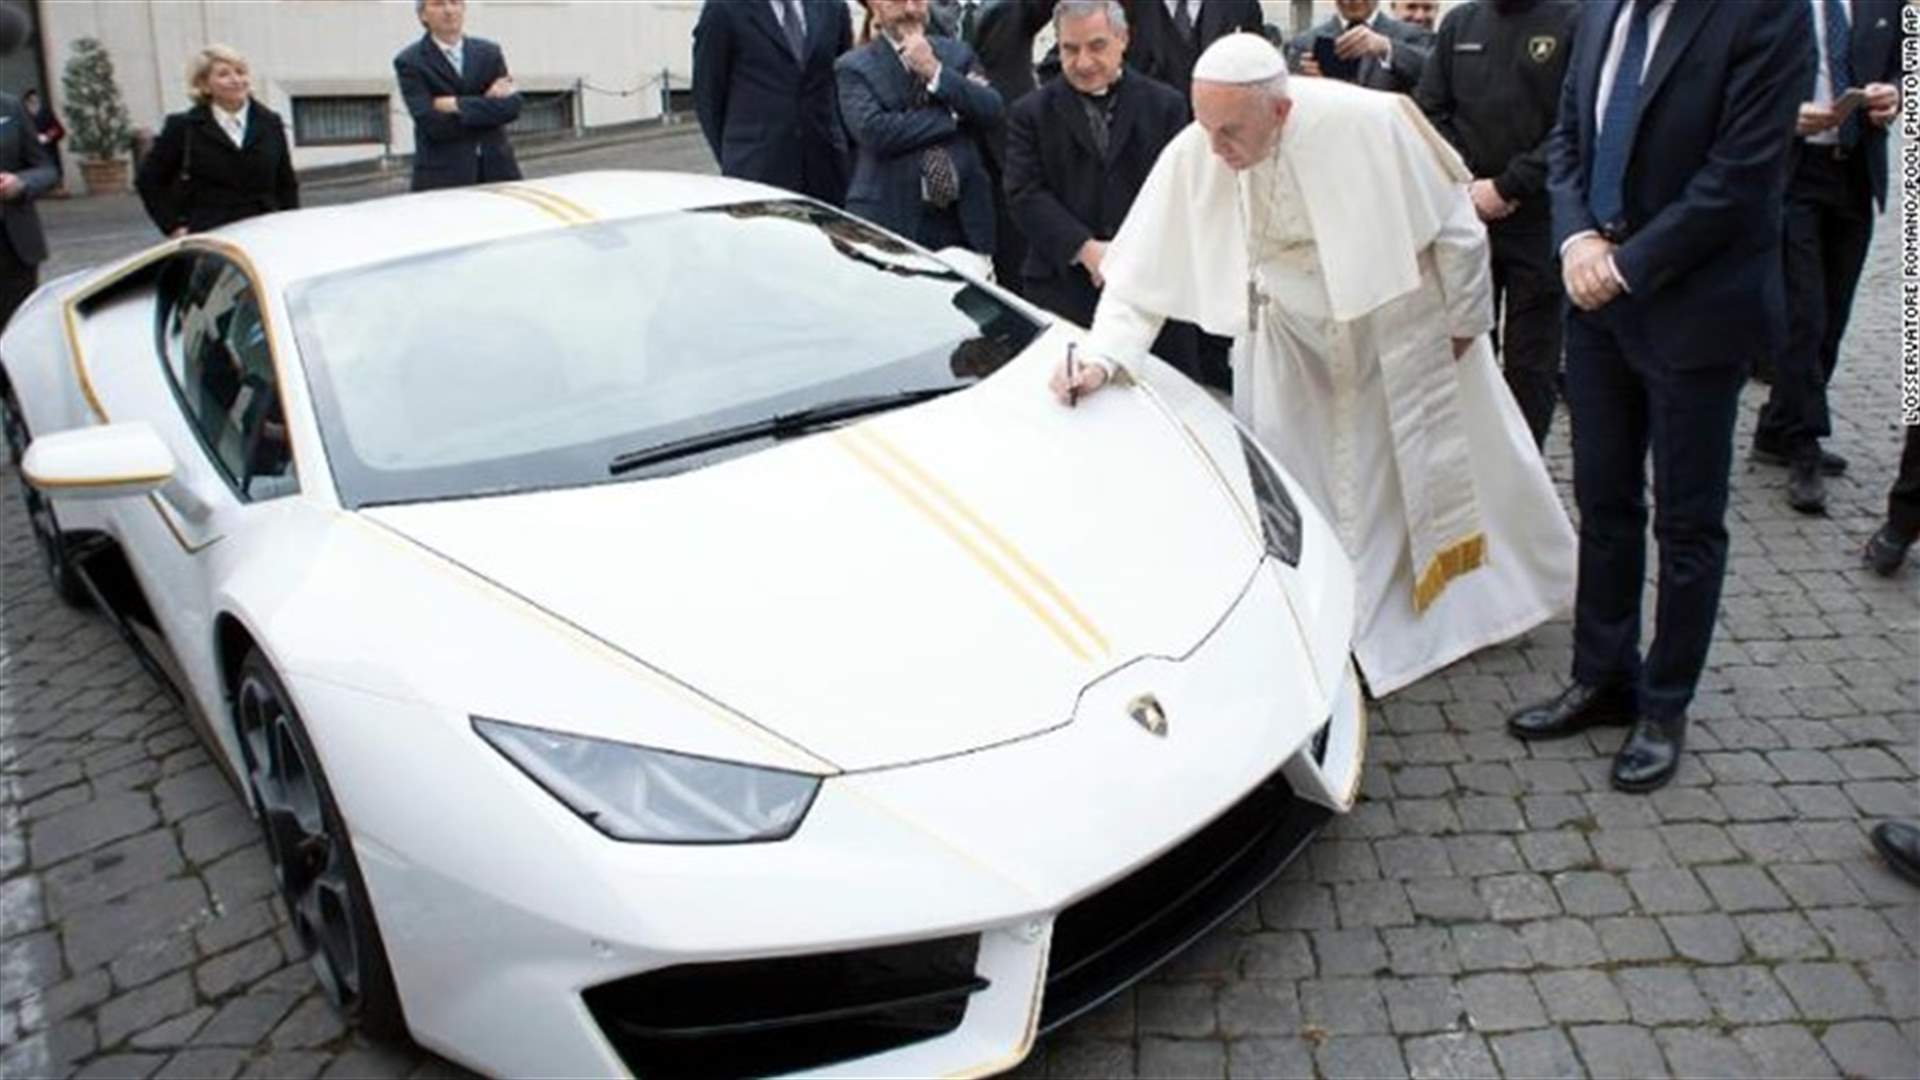 ماذا فعل البابا فرنسيس بسيارة لامبورغيني مميّزة قُدّمت له كهديّة؟